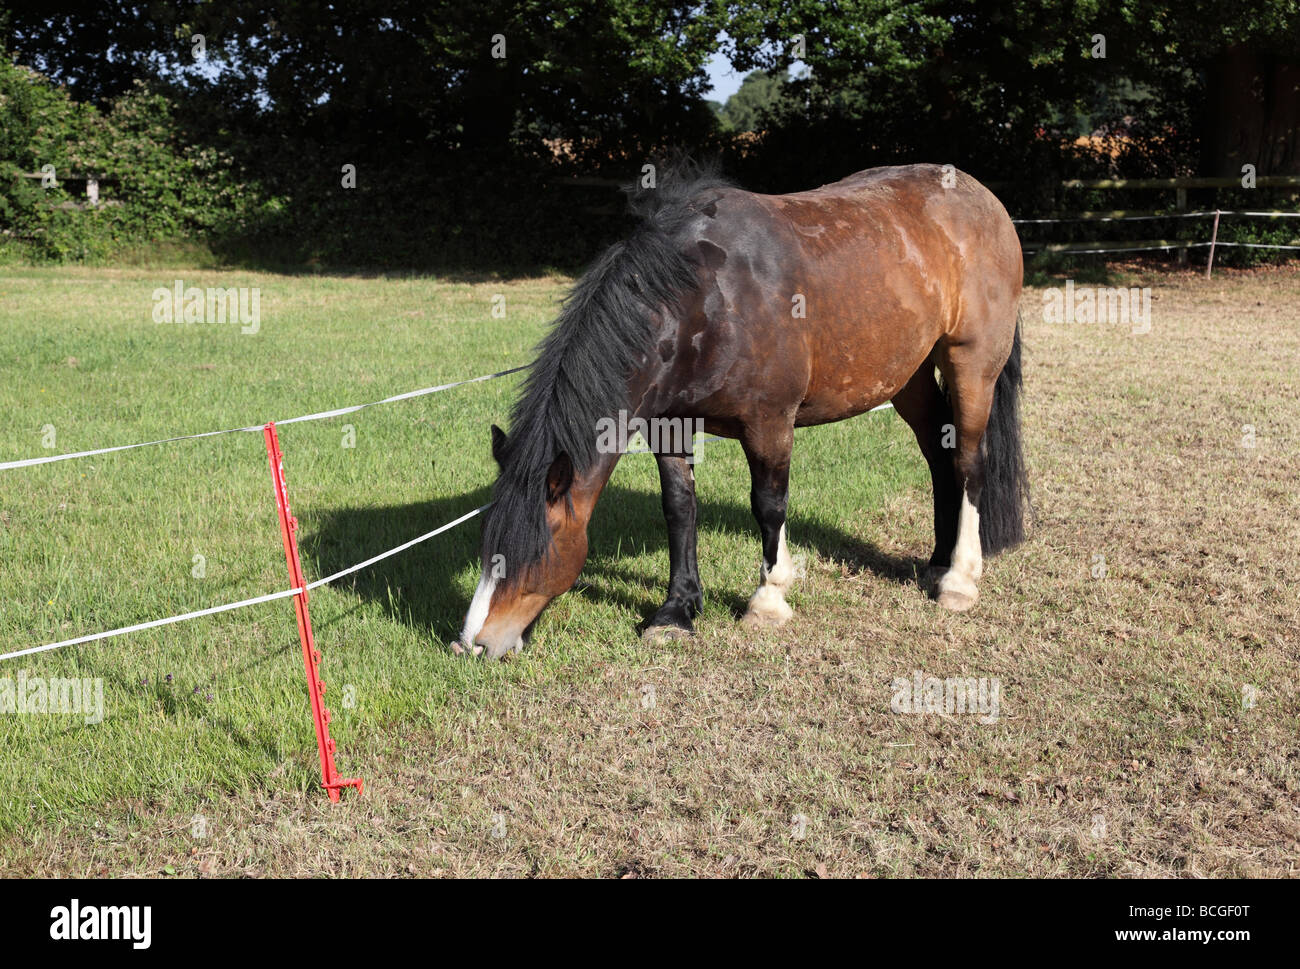 Une clôture électrique mobile temporaire utilisé pour restreindre le pâturage d'herbe pour un cheval Banque D'Images